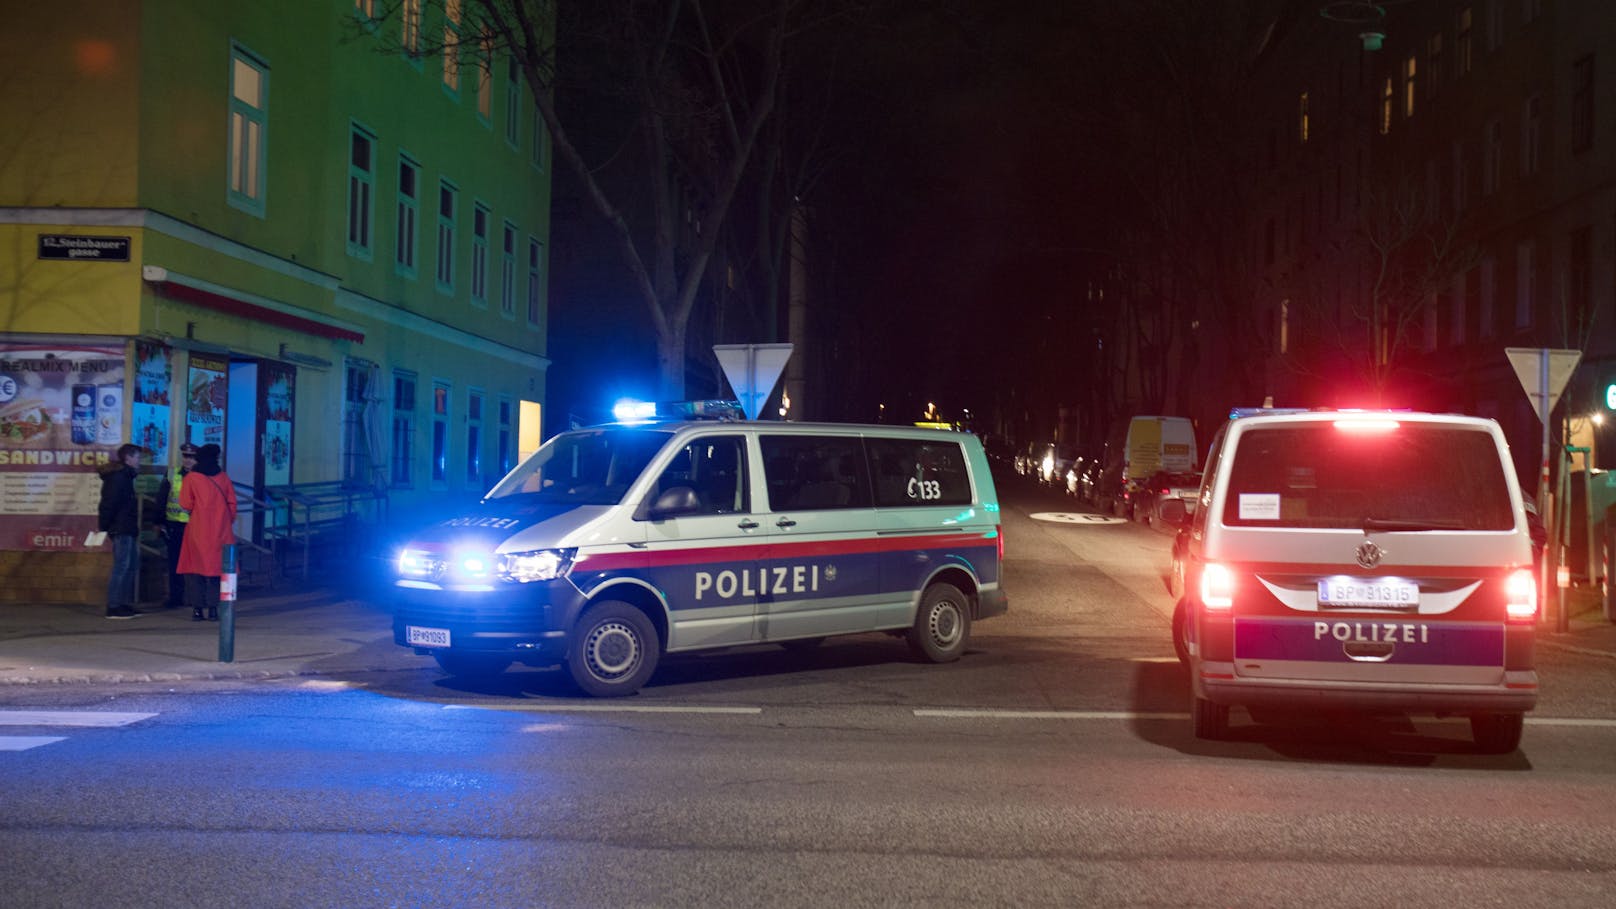 "Mein Auto!" Mann zieht in Wien plötzlich ein Messer